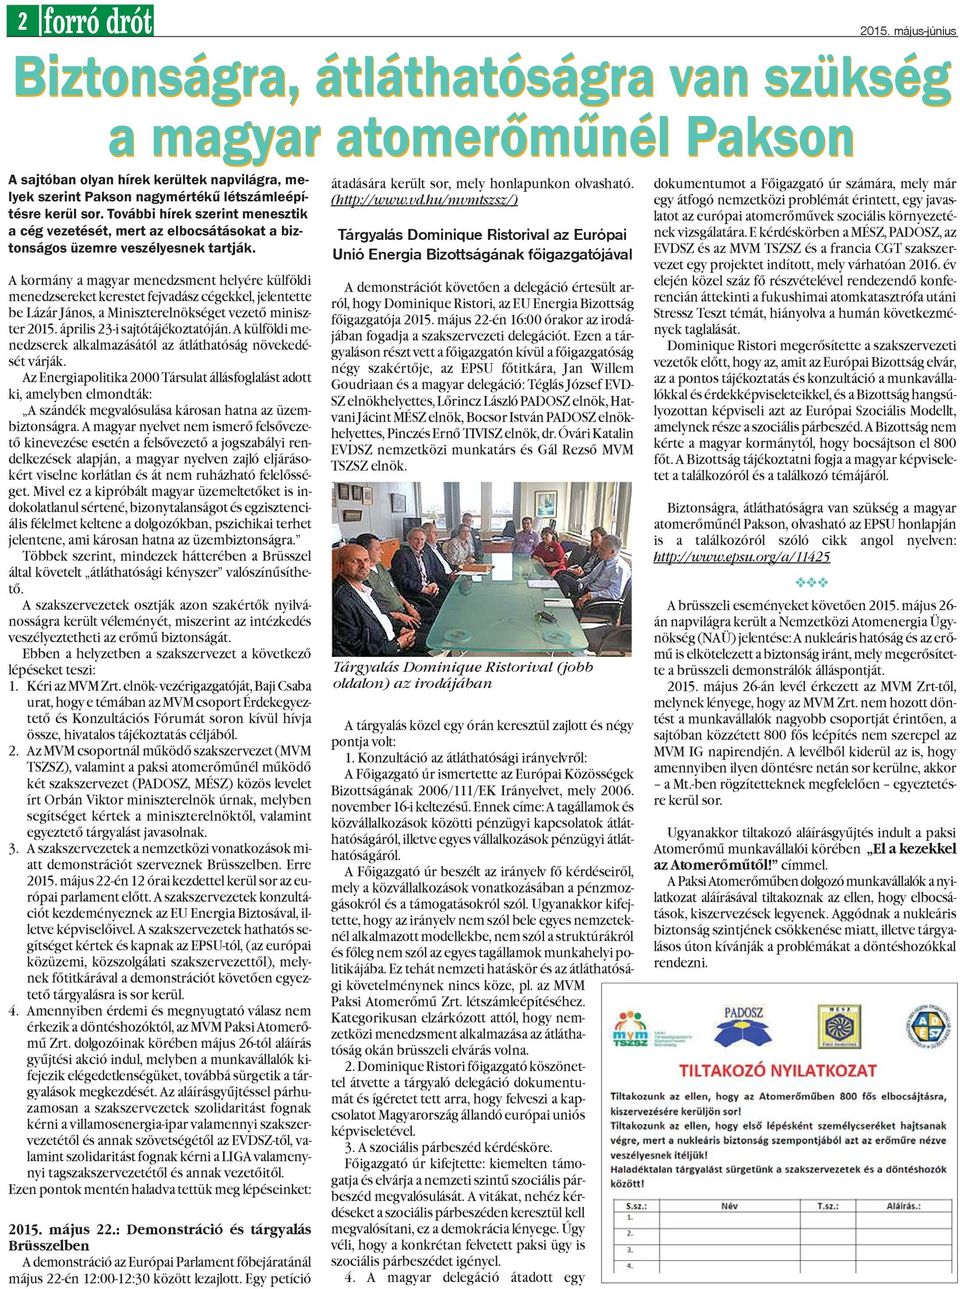 A kormány a magyar menedzsment helyére külföldi menedzsereket kerestet fejvadász cégekkel, jelentette be Lázár János, a Miniszterelnökséget vezetõ miniszter 2015. április 23-i sajtótájékoztatóján.